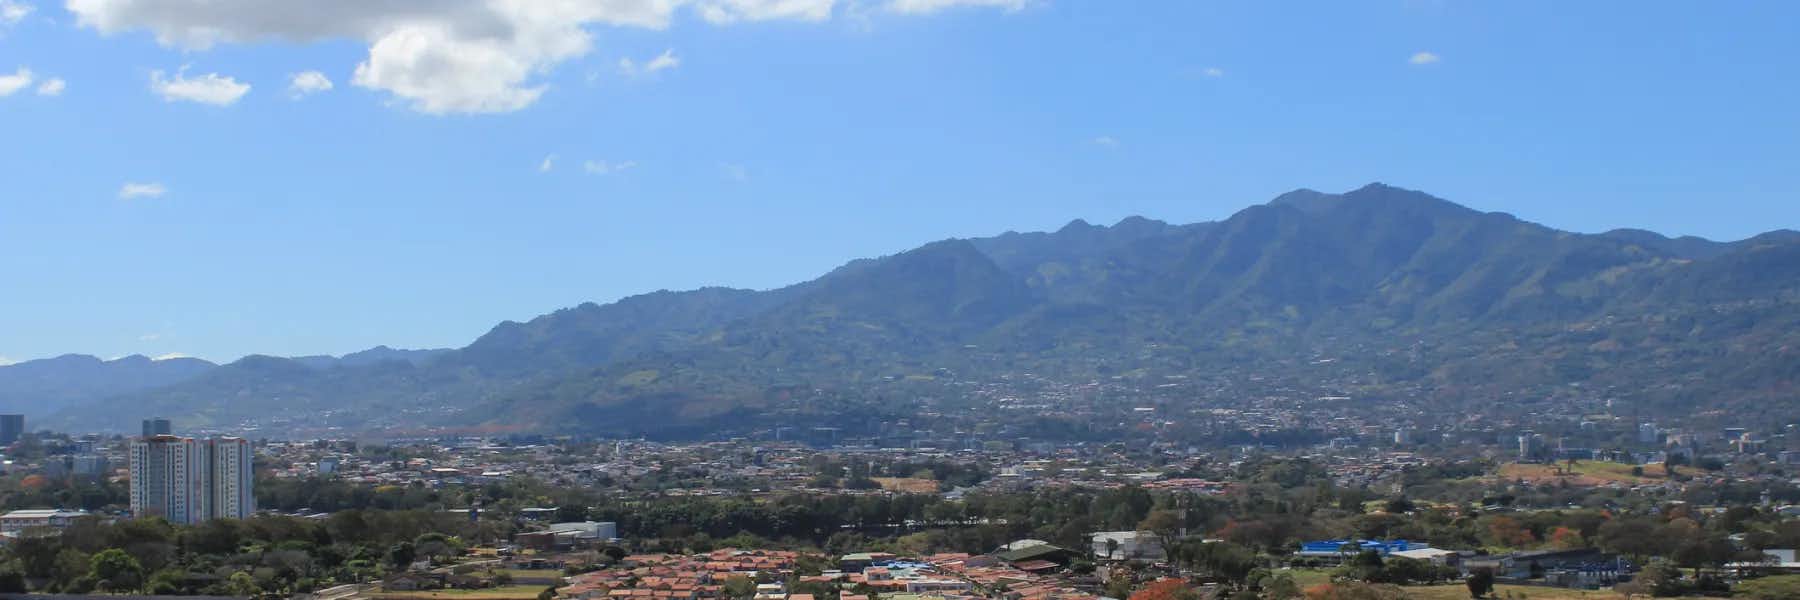 Escazú, Costa Rica